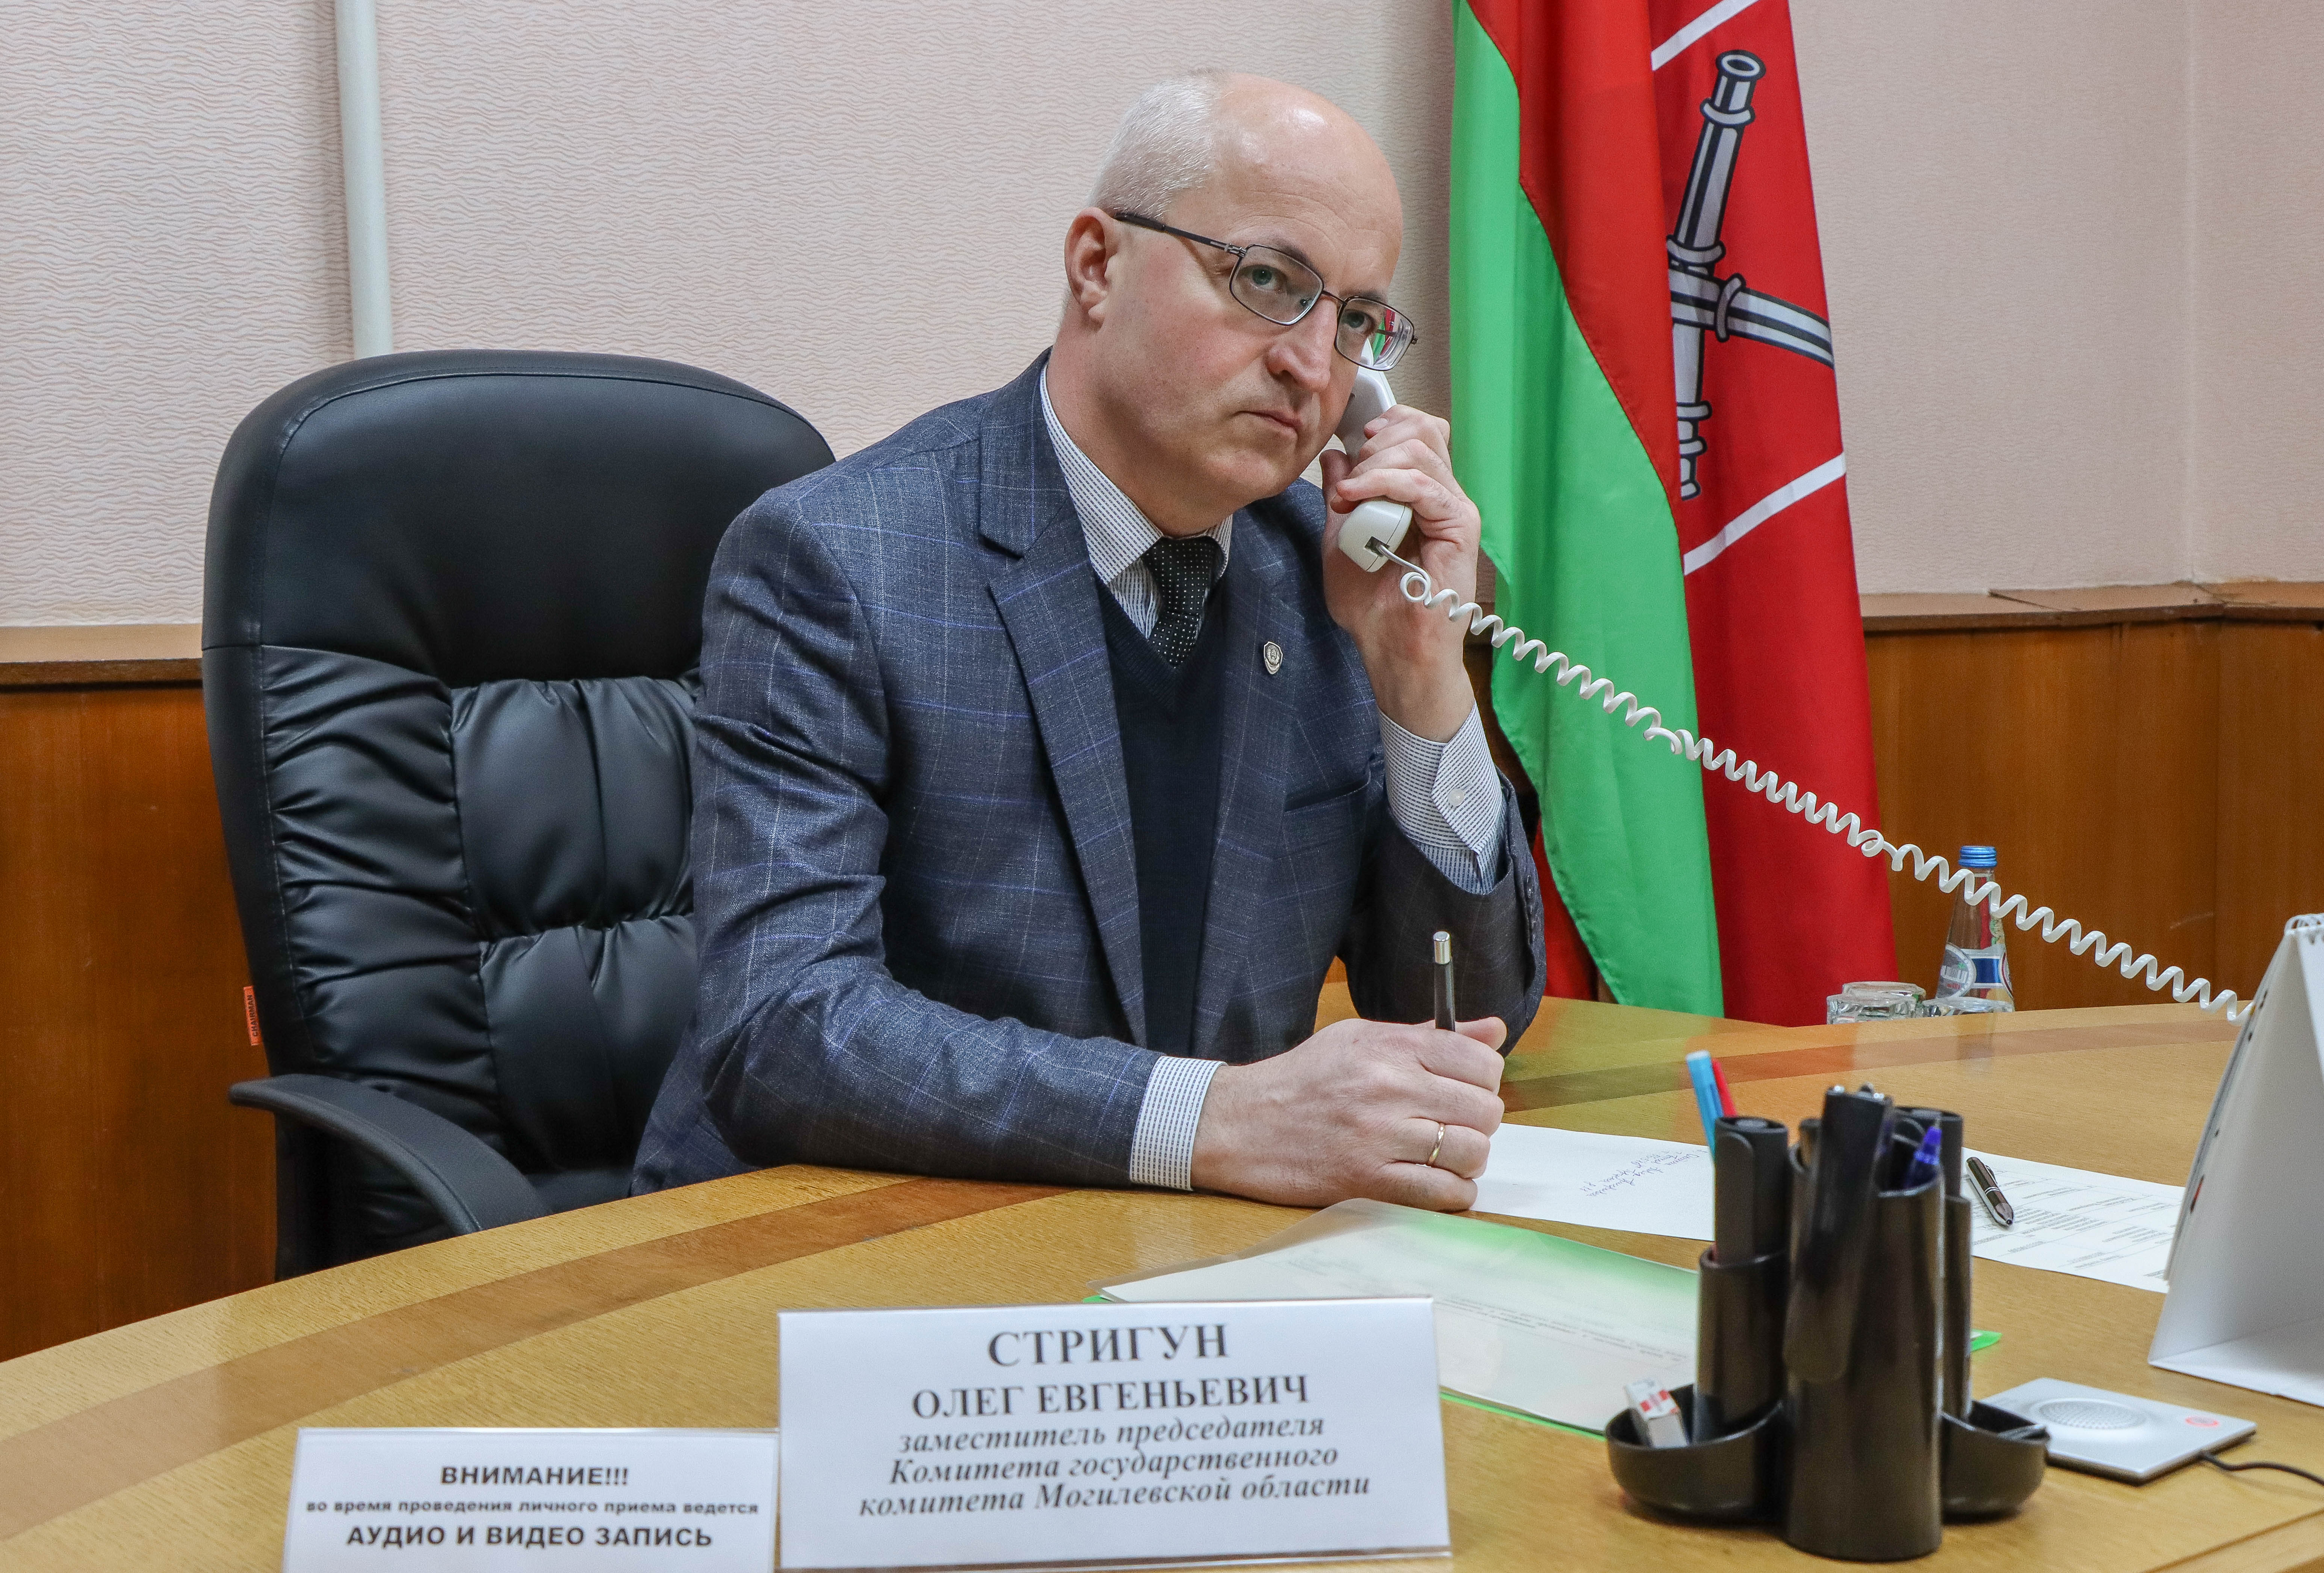 Прямая телефонная линия» и прием граждан по личным вопросам в Быховском районе